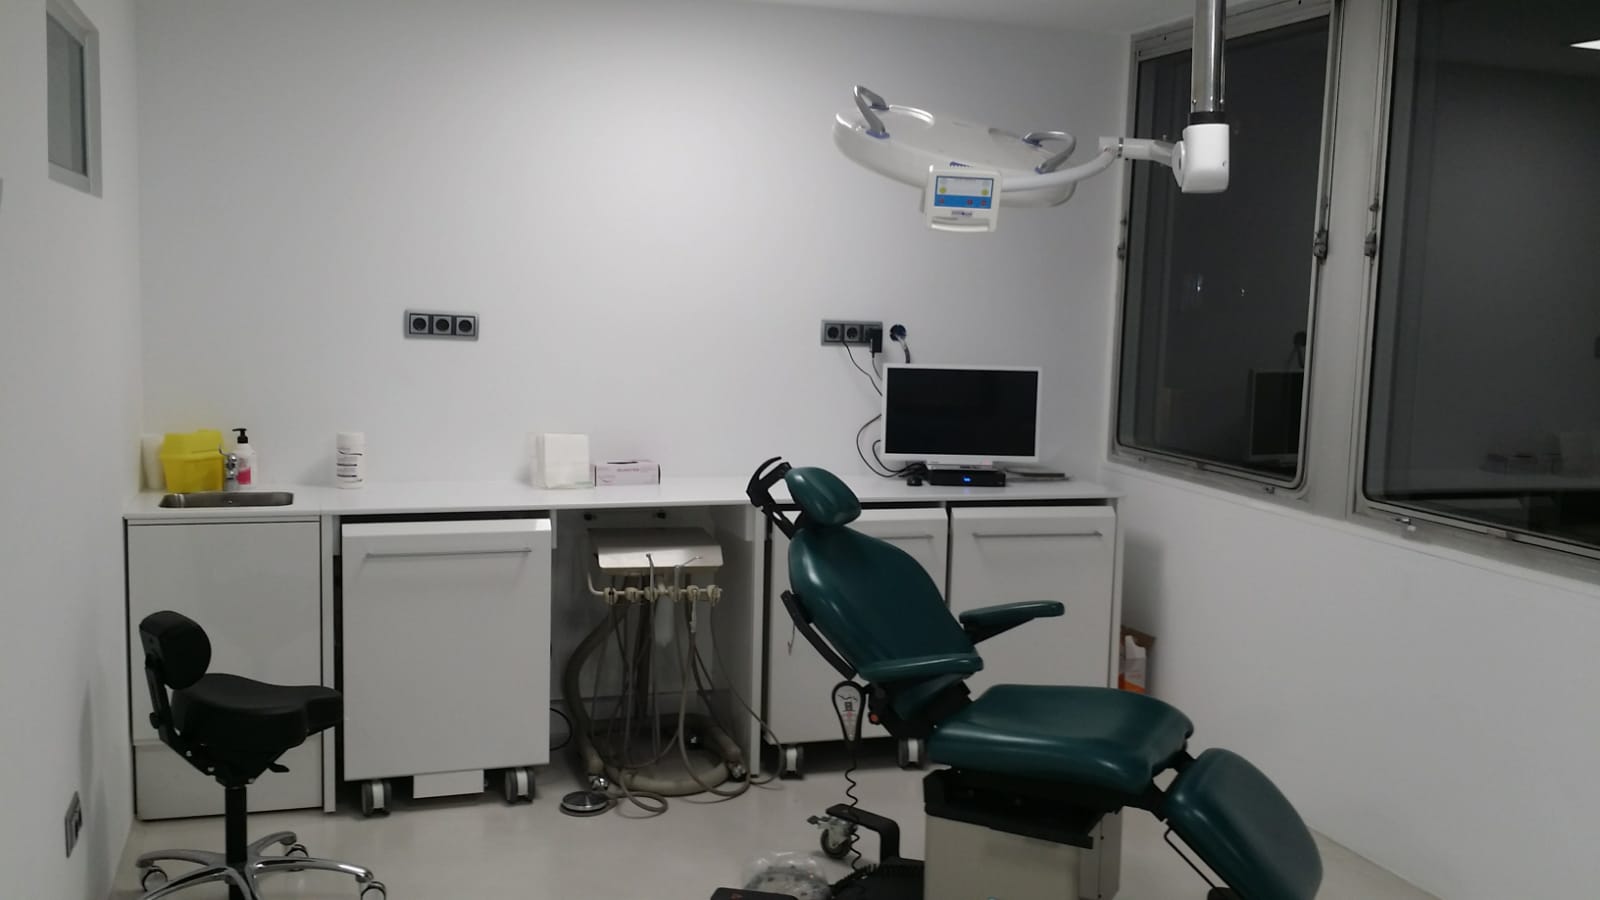 Estrenamos instalaciones en nuestra Clínica AVR Clínica de Cirugía Maxilofacial en Barcelona Doctor Antonio Vazquez, cirujano maxilofacial